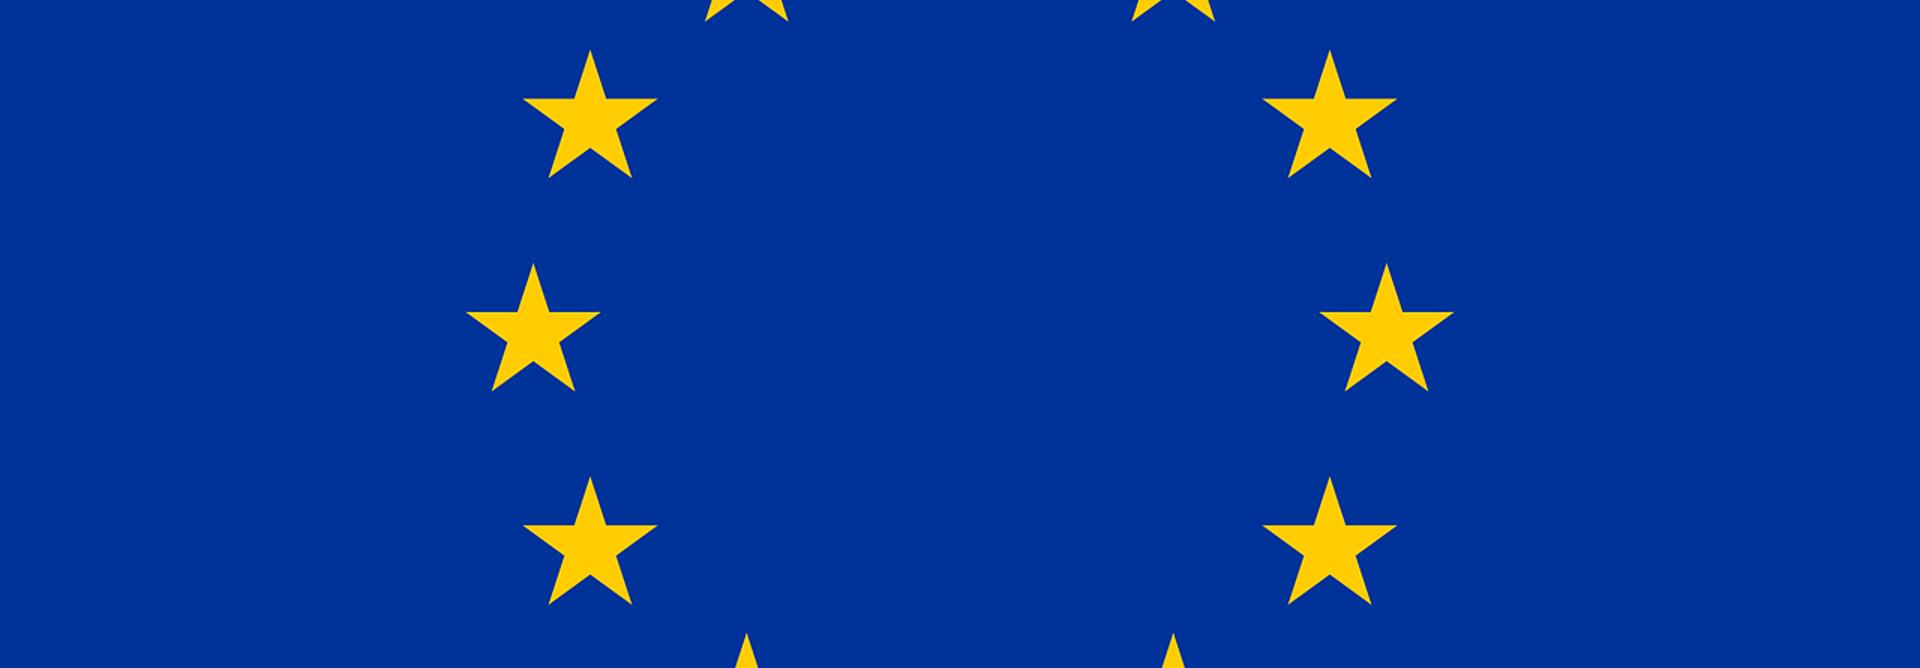 European Union 155207 1280